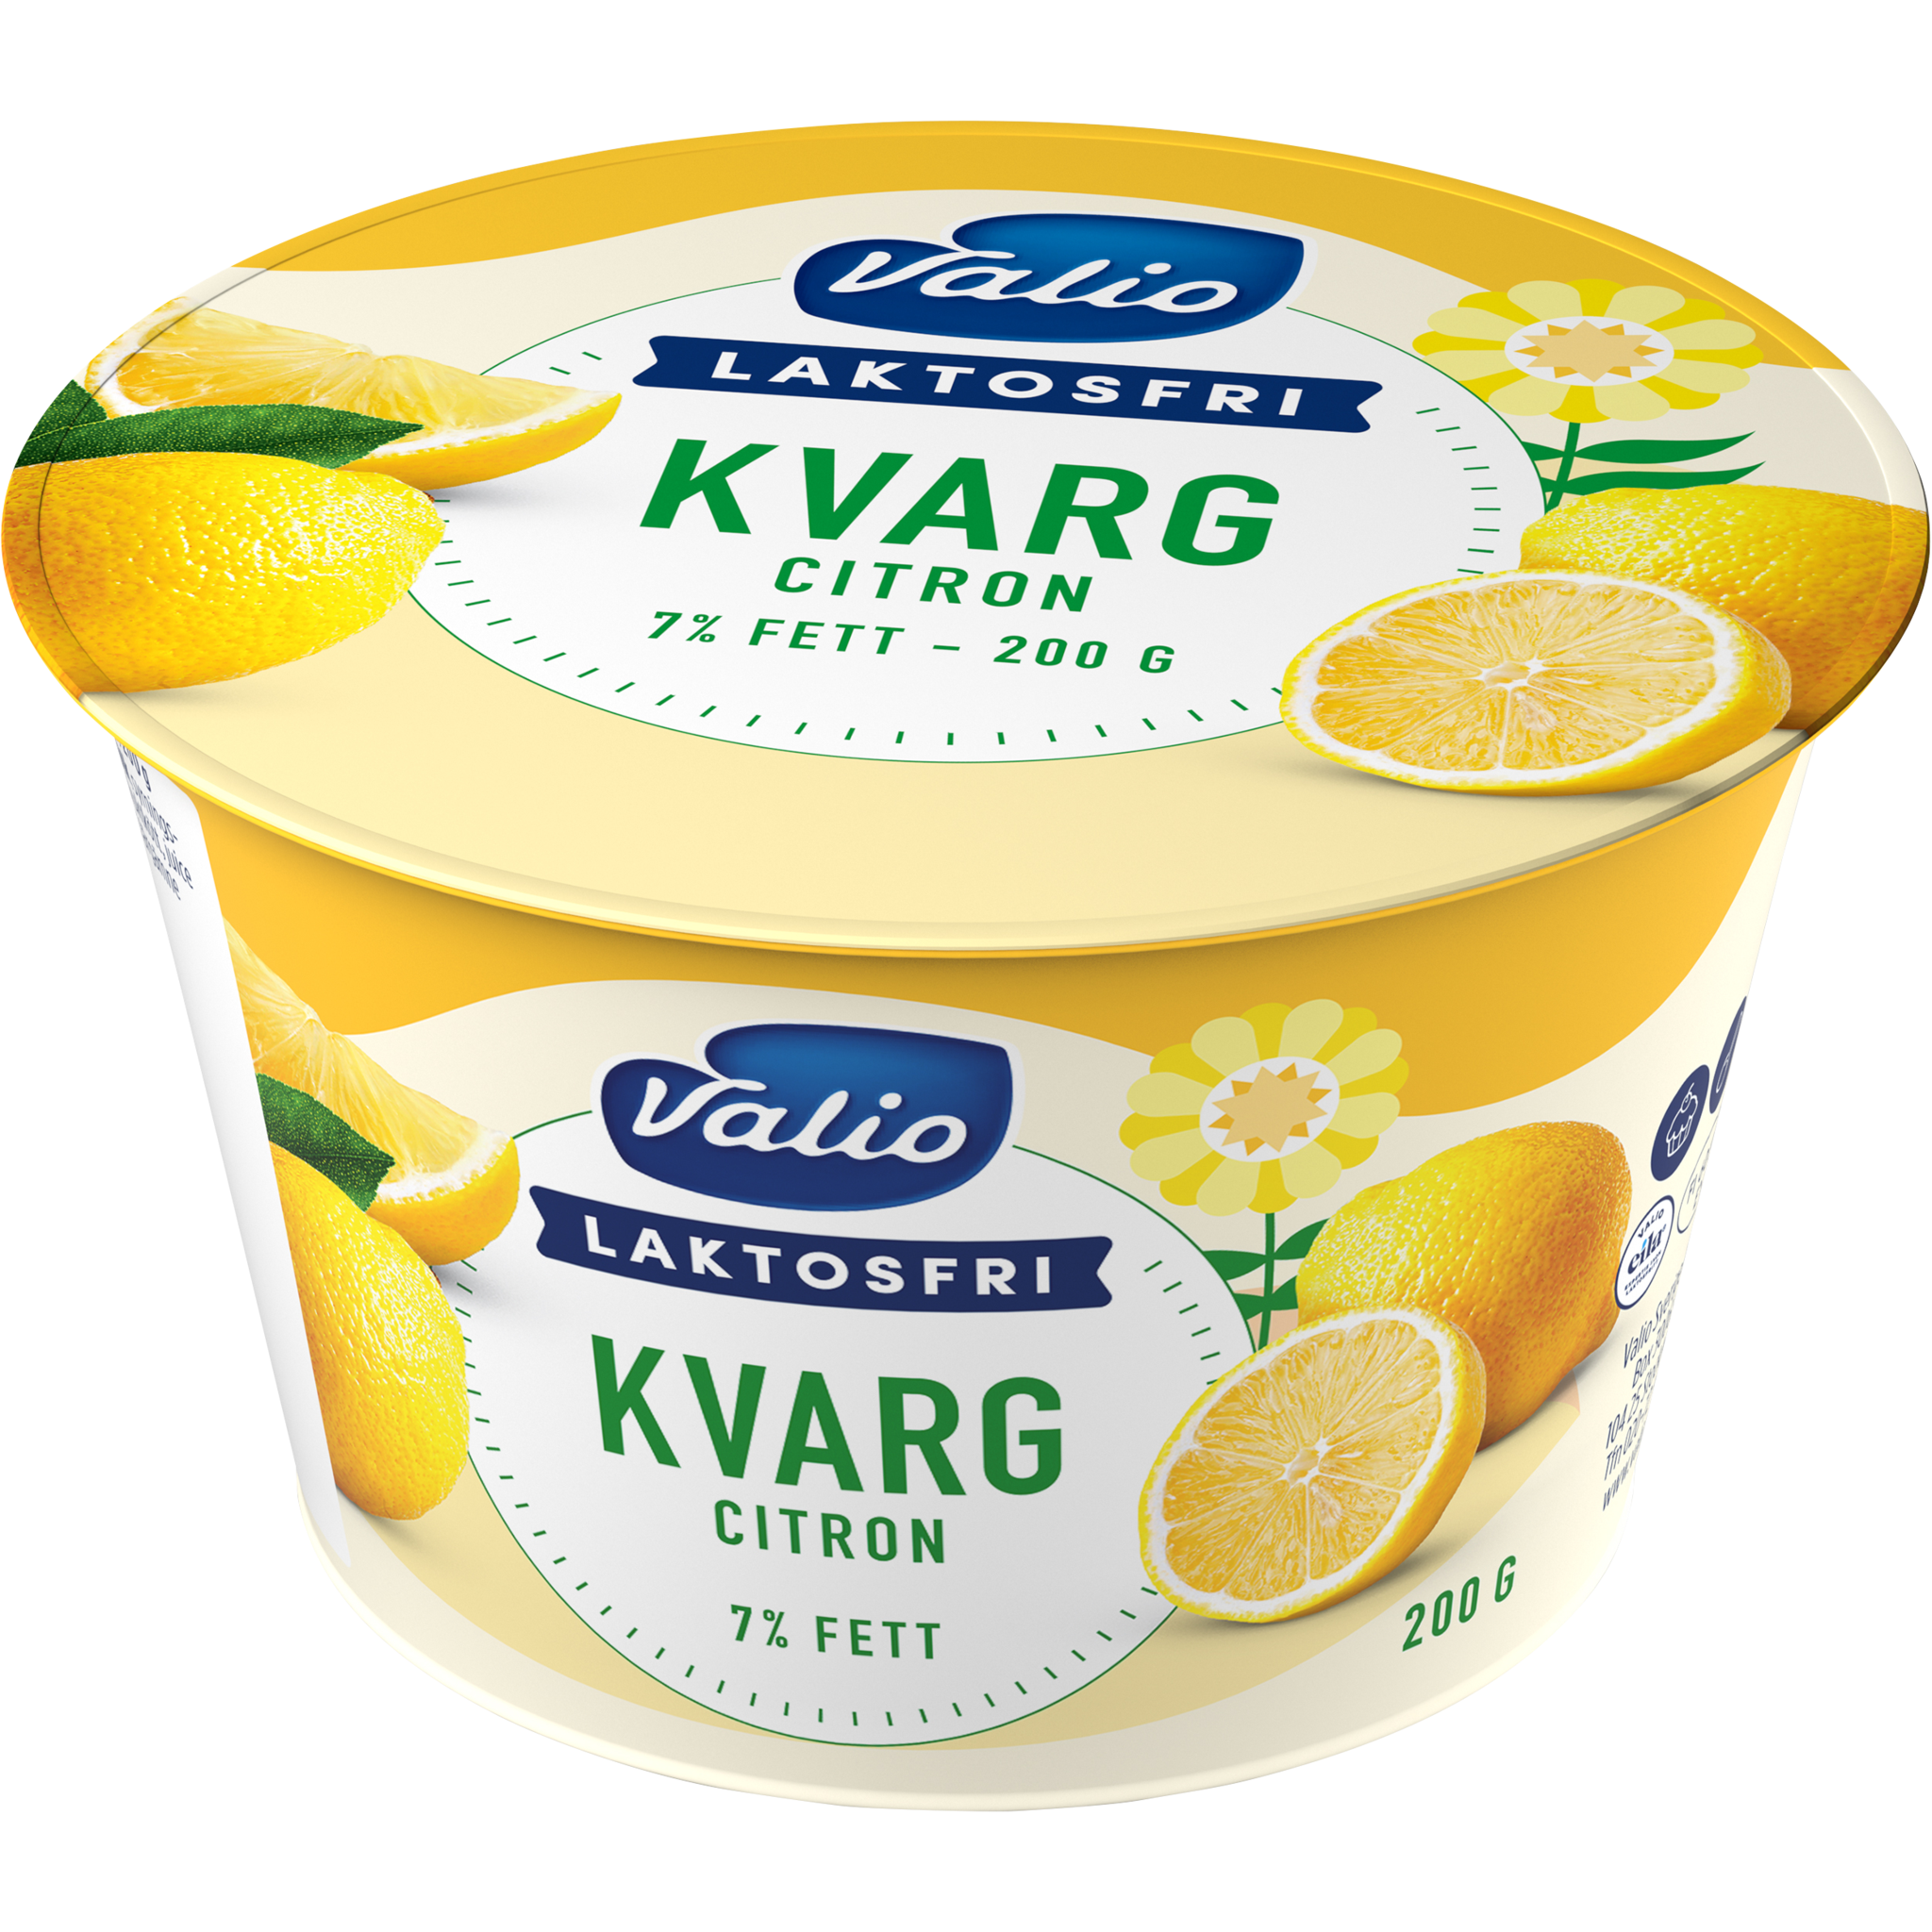 Valio Laktosfri Kvarg Citron | Valio